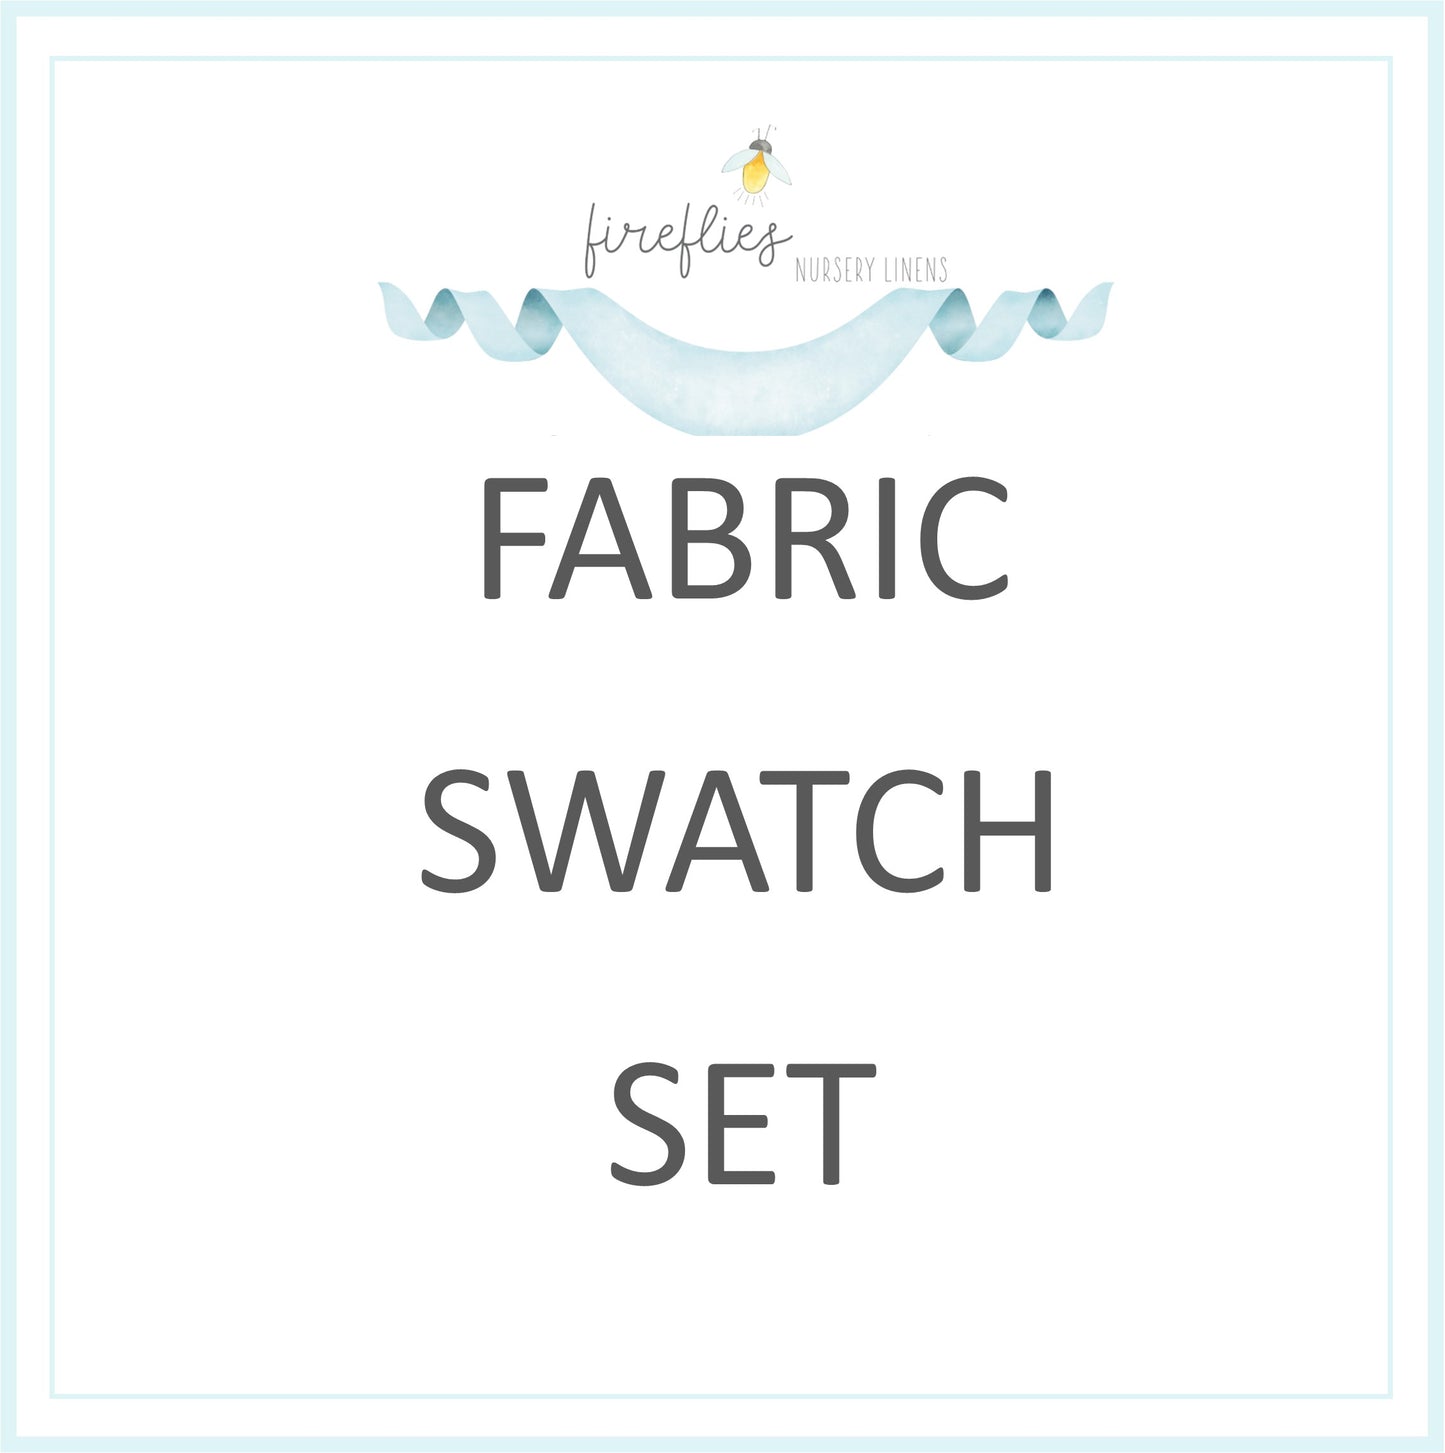 Fireflies Fabric Swatch Set